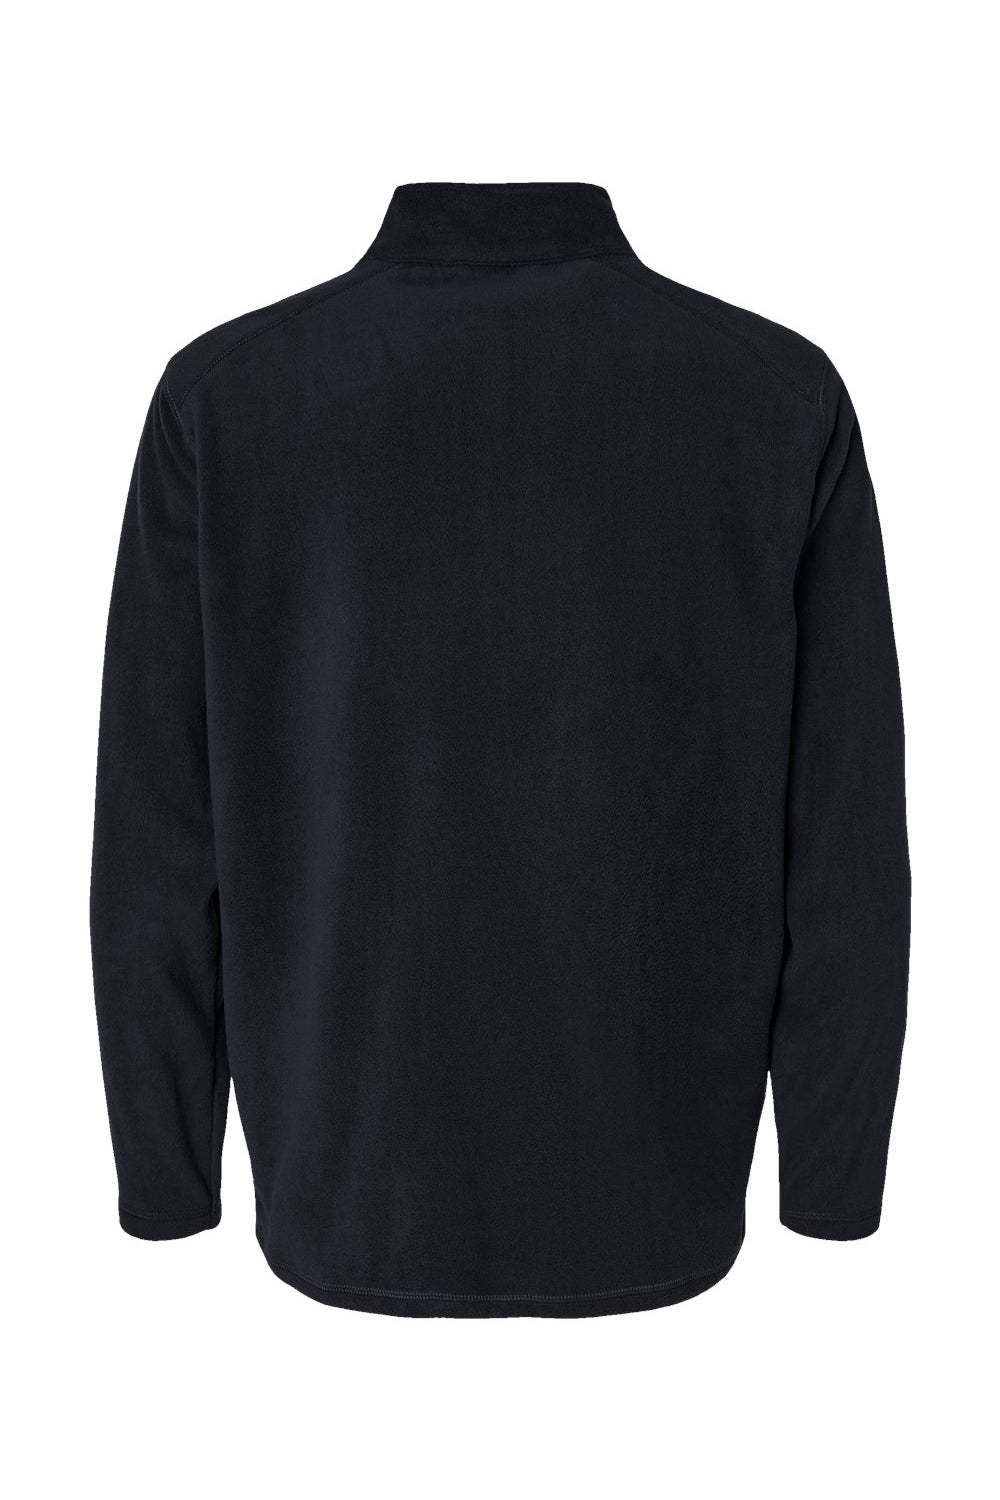 Augusta Sportswear 6863 Mens Eco Revive Micro Lite Fleece 1/4 Zip Sweatshirt Black Flat Back